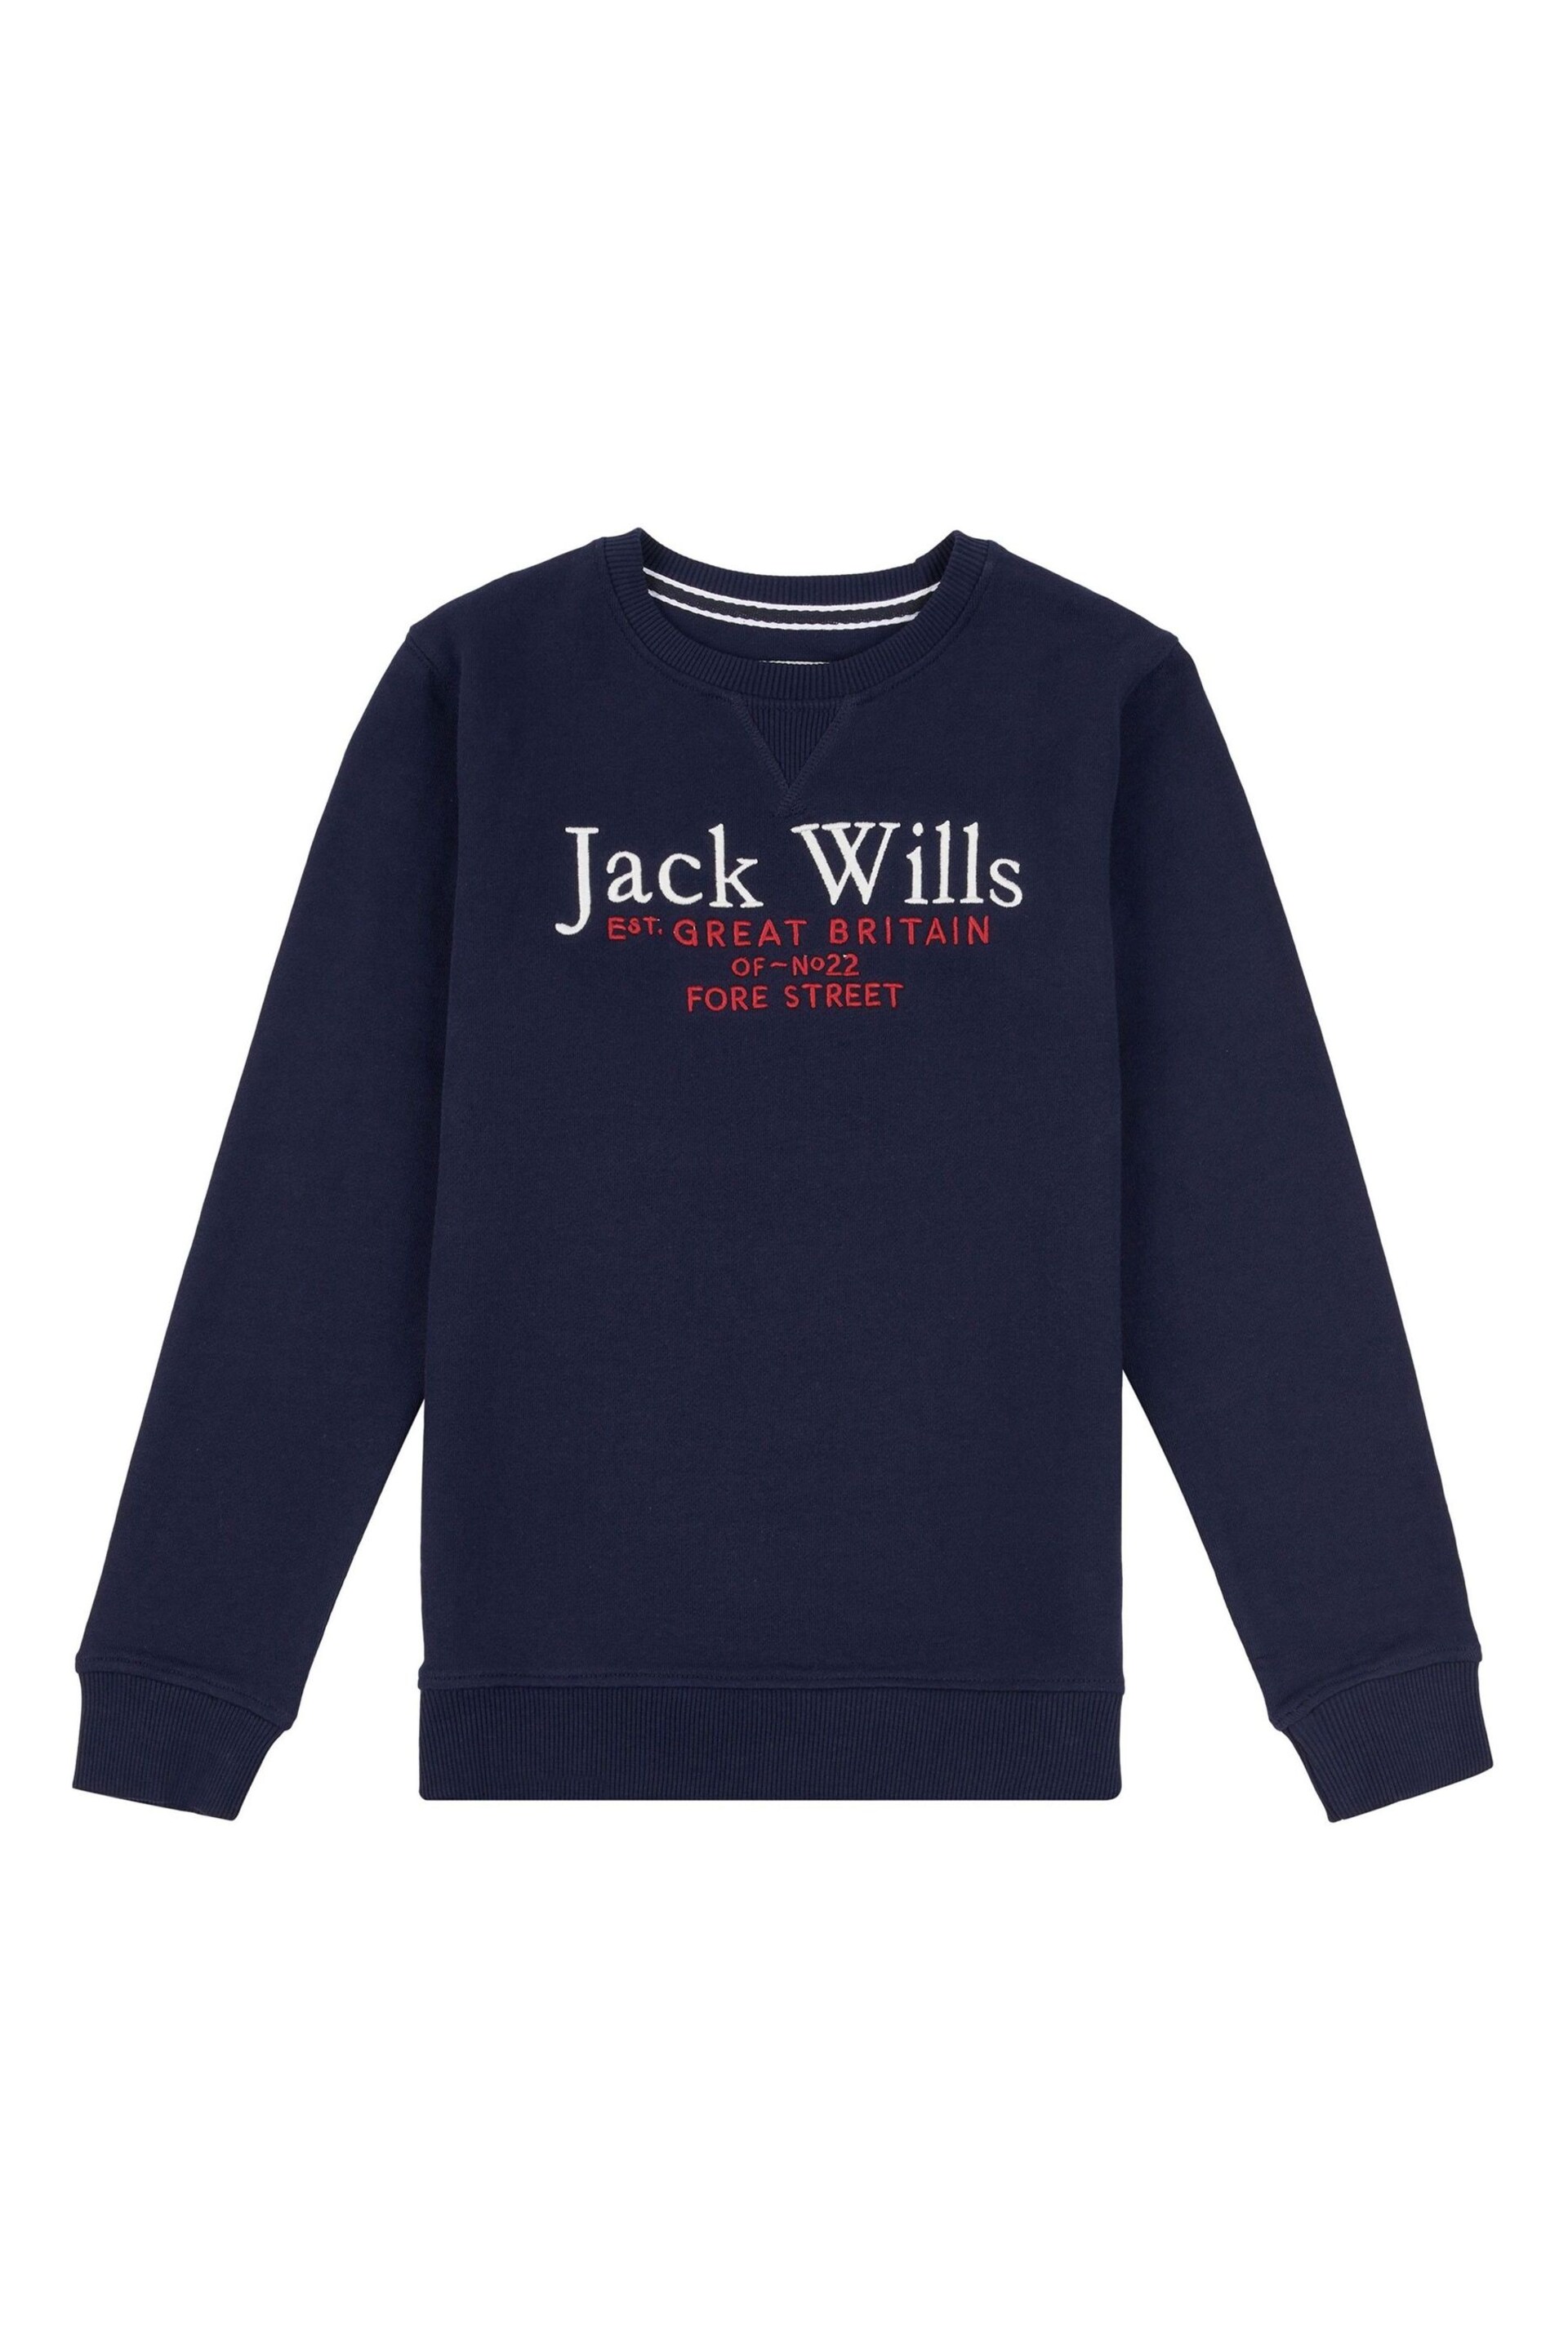 Jack Wills Blue Script LB Crew Sweatshirt - Image 1 of 3